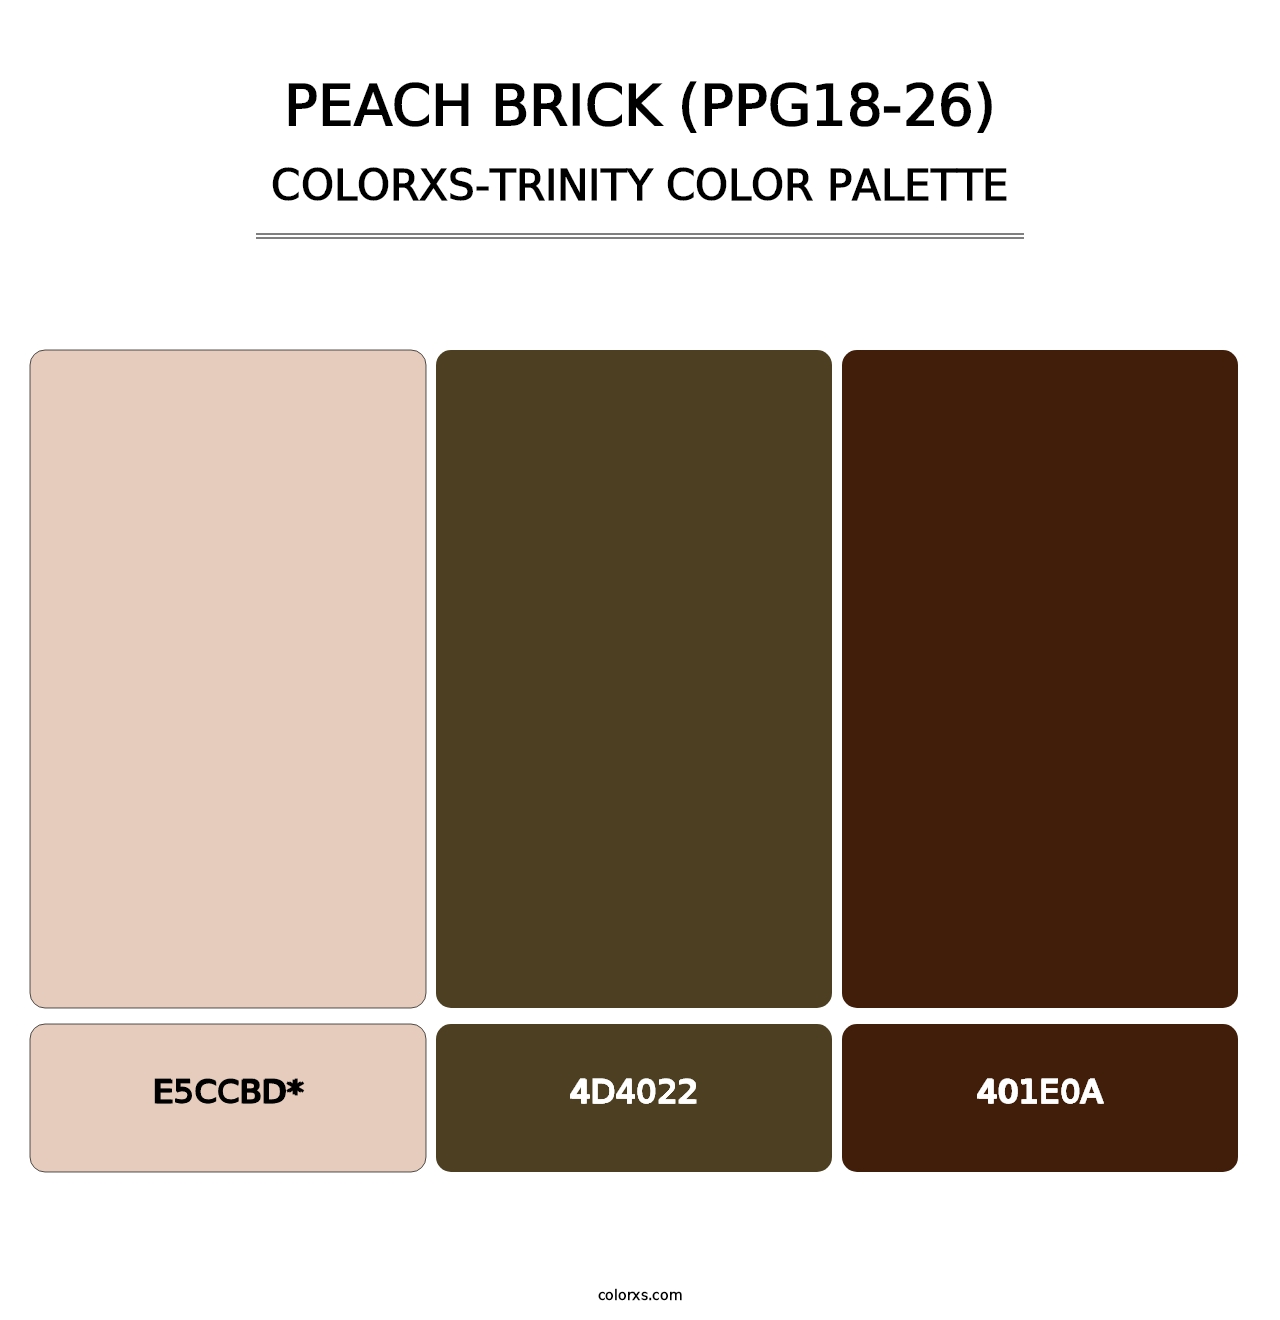 Peach Brick (PPG18-26) - Colorxs Trinity Palette